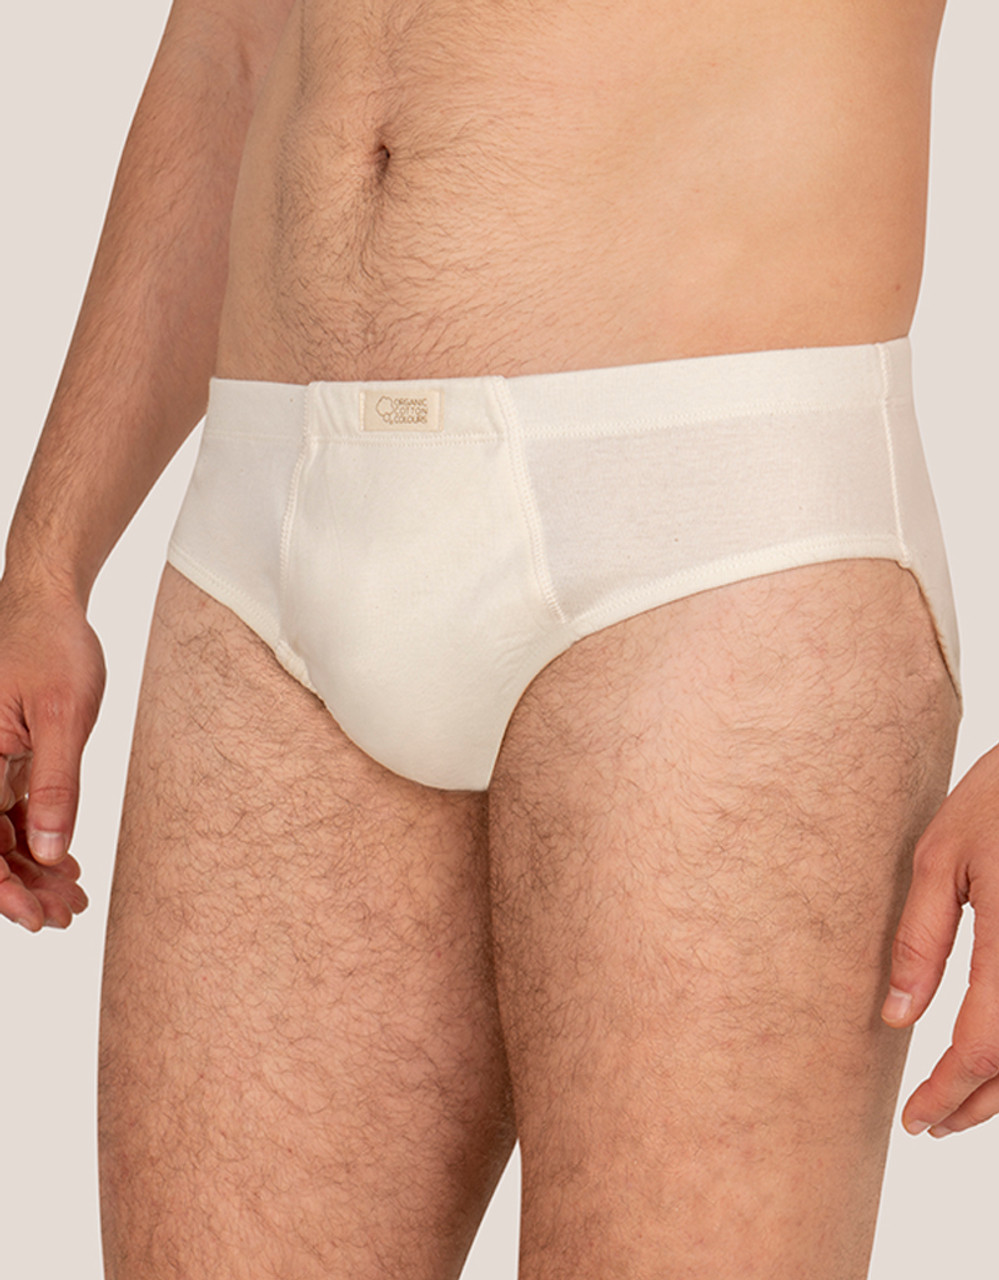 Do it for Dad - The best organic cotton underwear for men – Y.O.U underwear